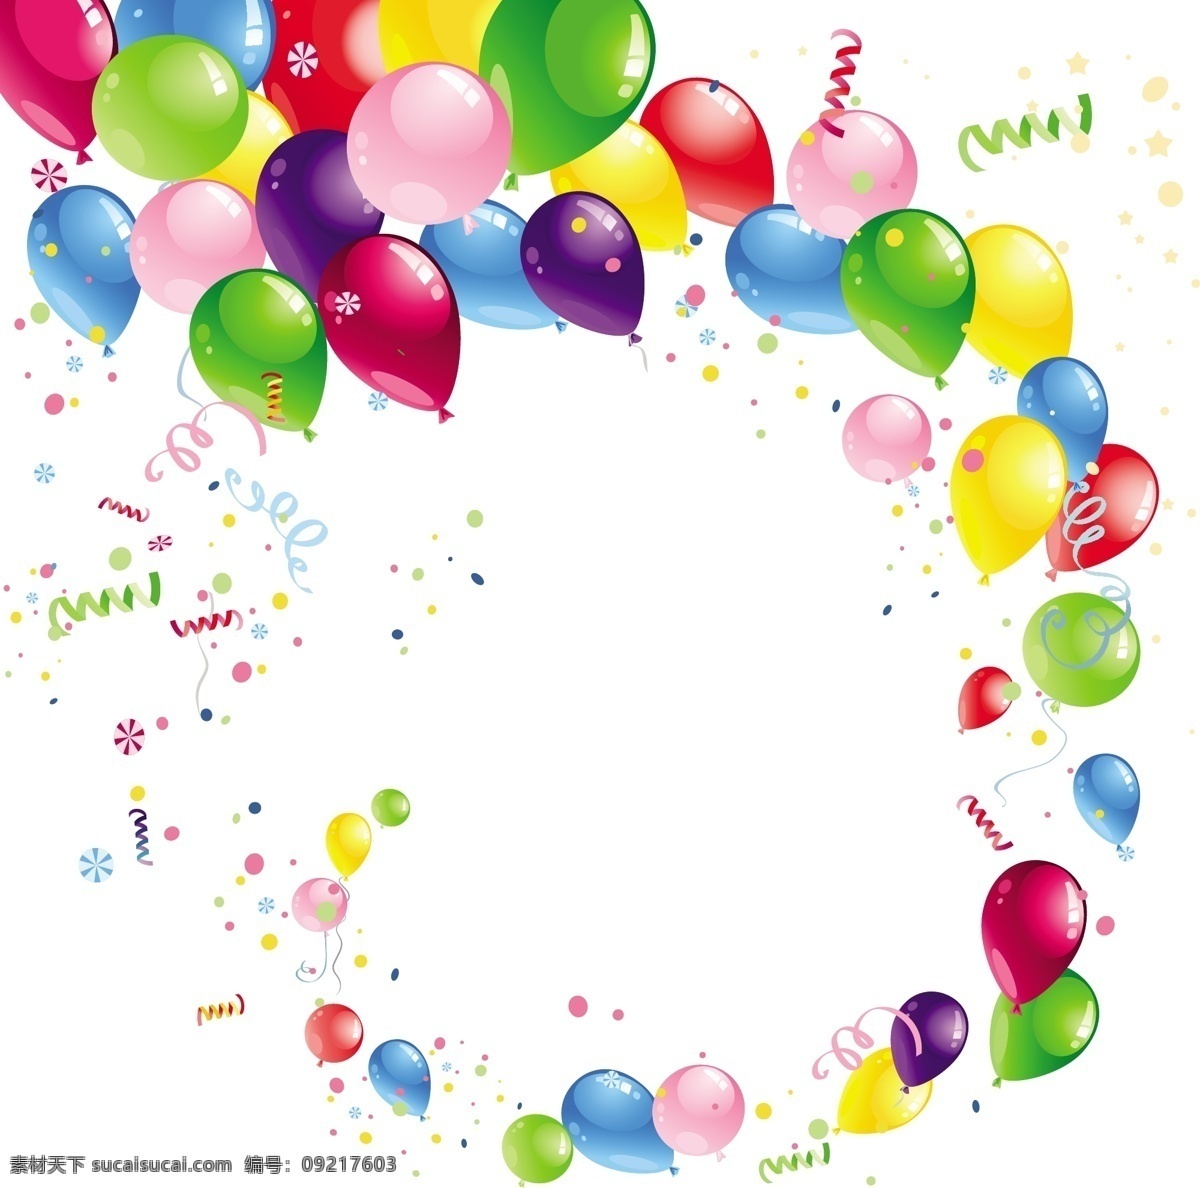 动感节日彩球 彩球 气球 动感 彩色气球 节日 祝福 庆祝 时尚 梦幻 背景 矢量 节日其他 节日素材